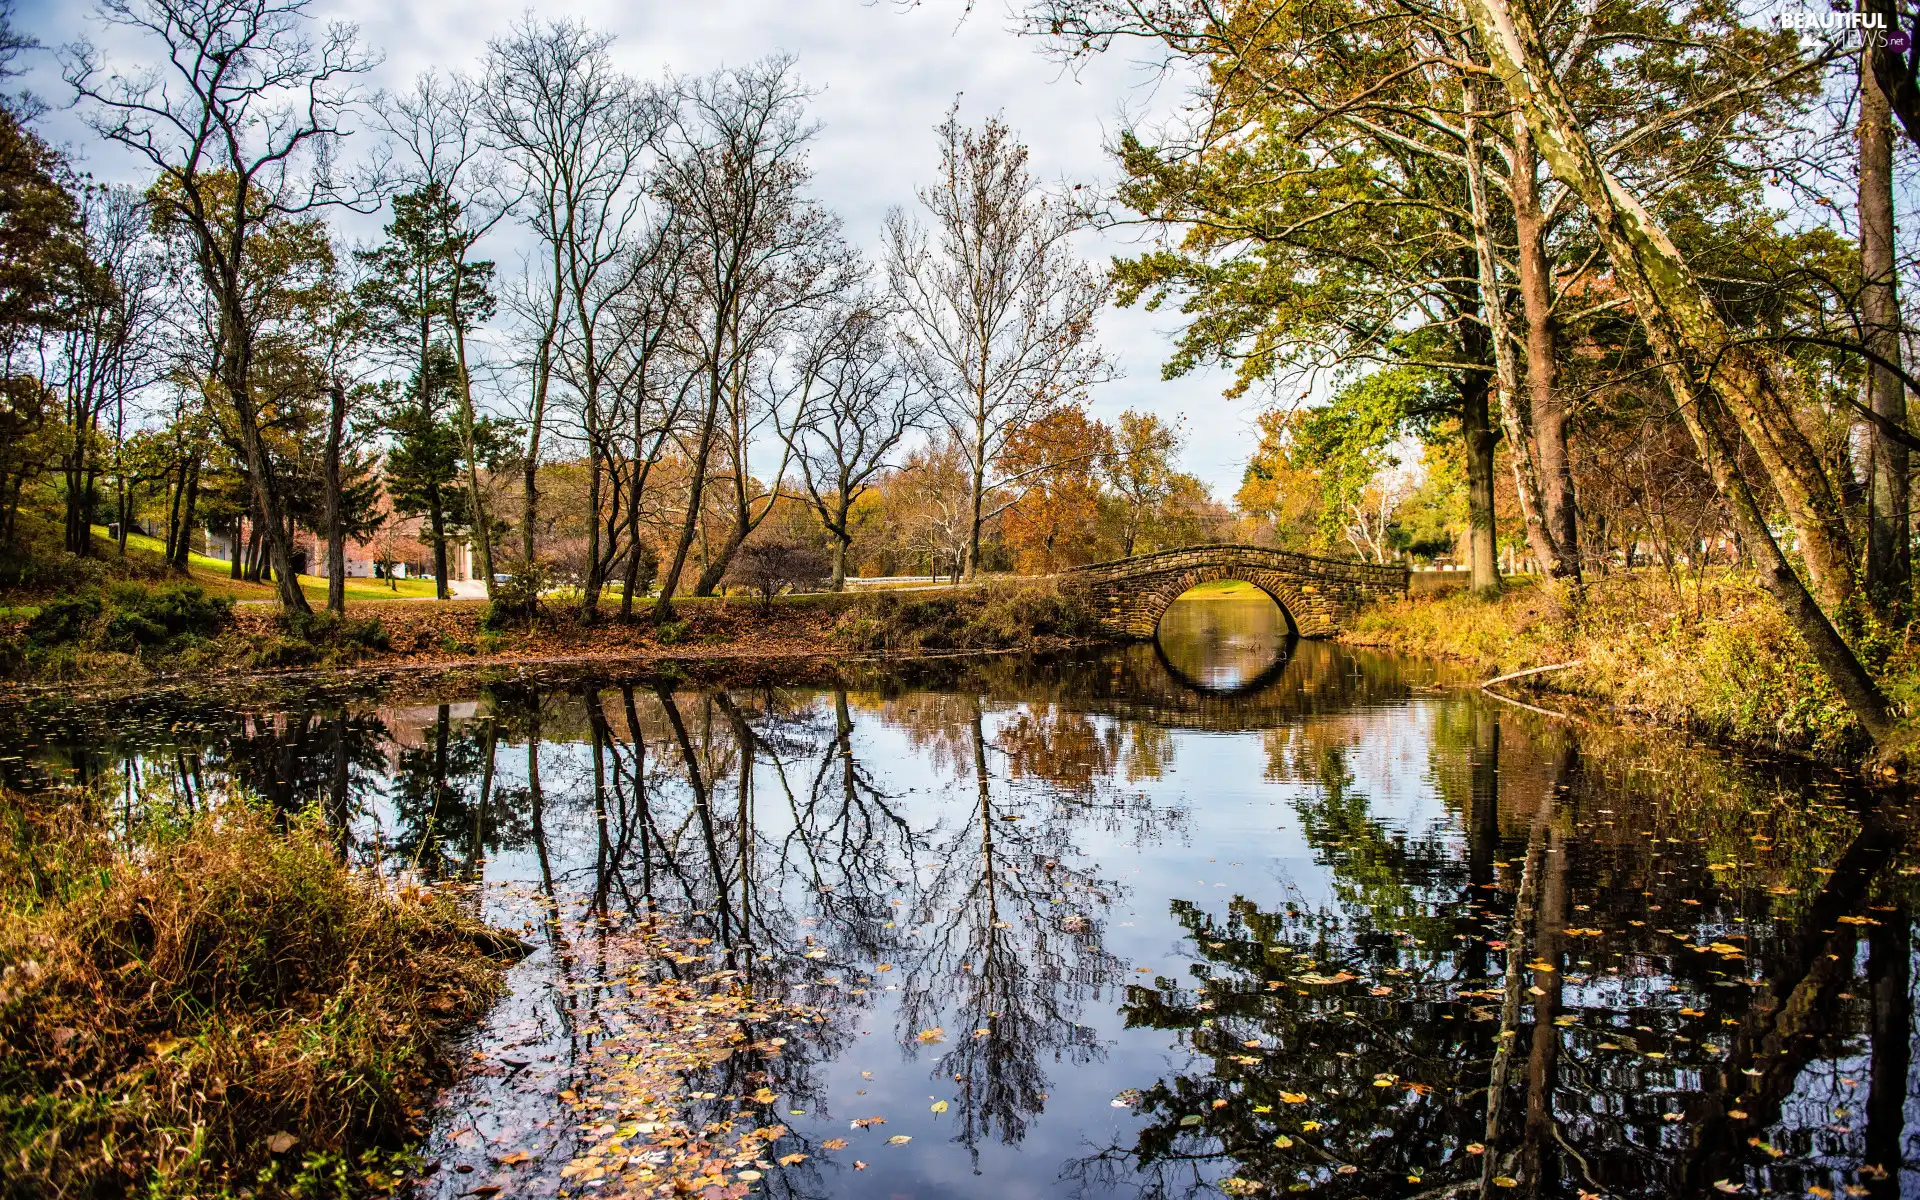 trees, viewes, autumn, Leaf, reflection, bridge, Pond - car, Park